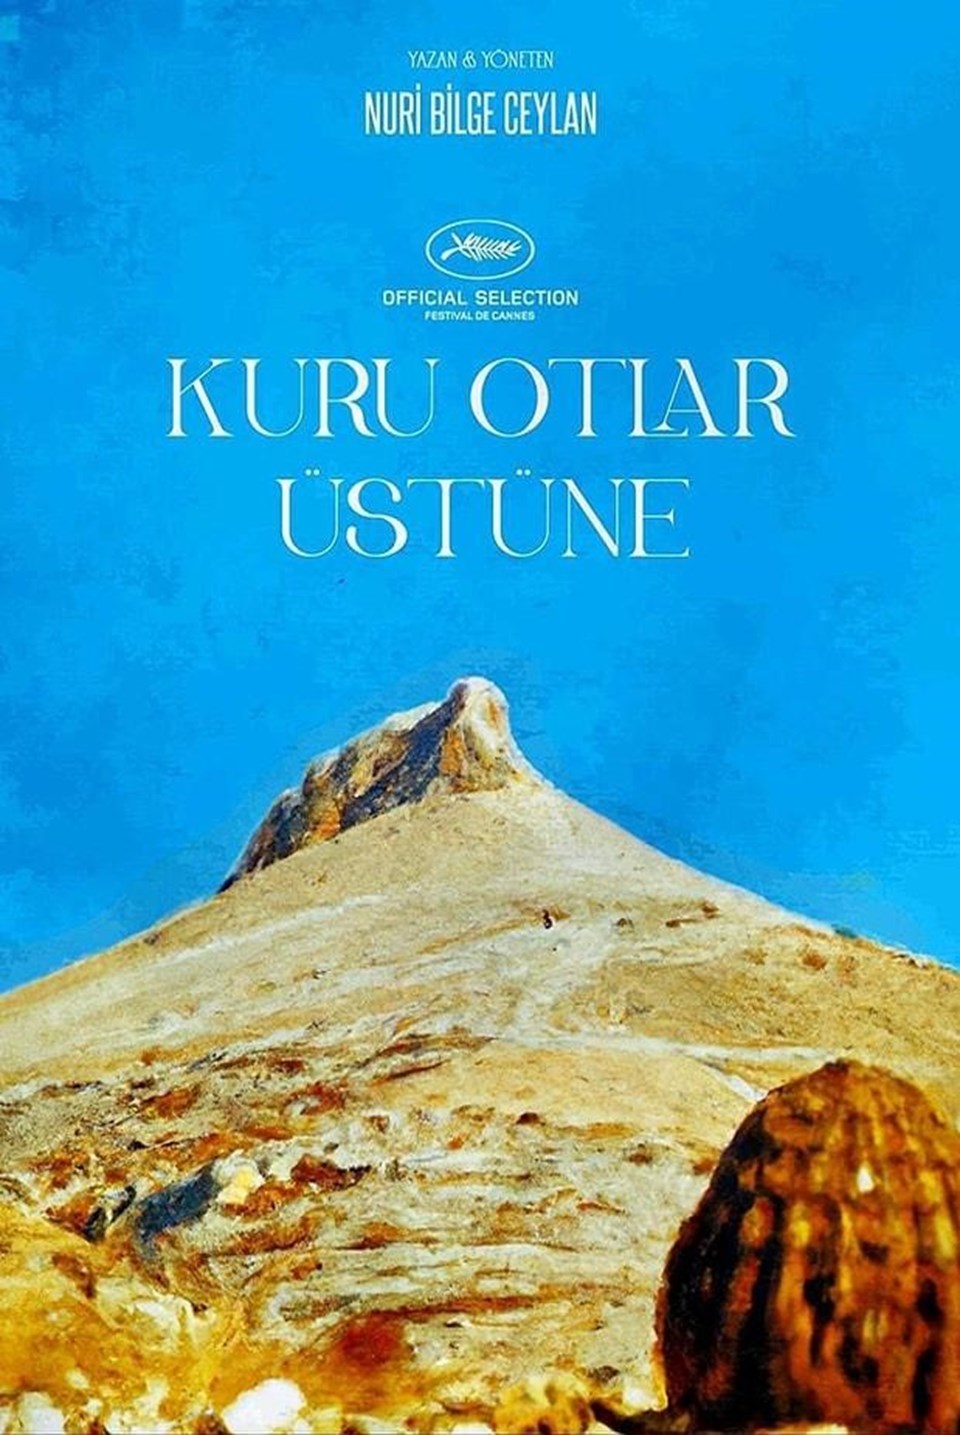 Nuri Bilge Ceylan'ın yeni filmi Kuru Otlar Üstüne Cannes ana yarışmasında yarışacak (Kuru Otlar Üstüne oyuncuları ve konusu) - 3